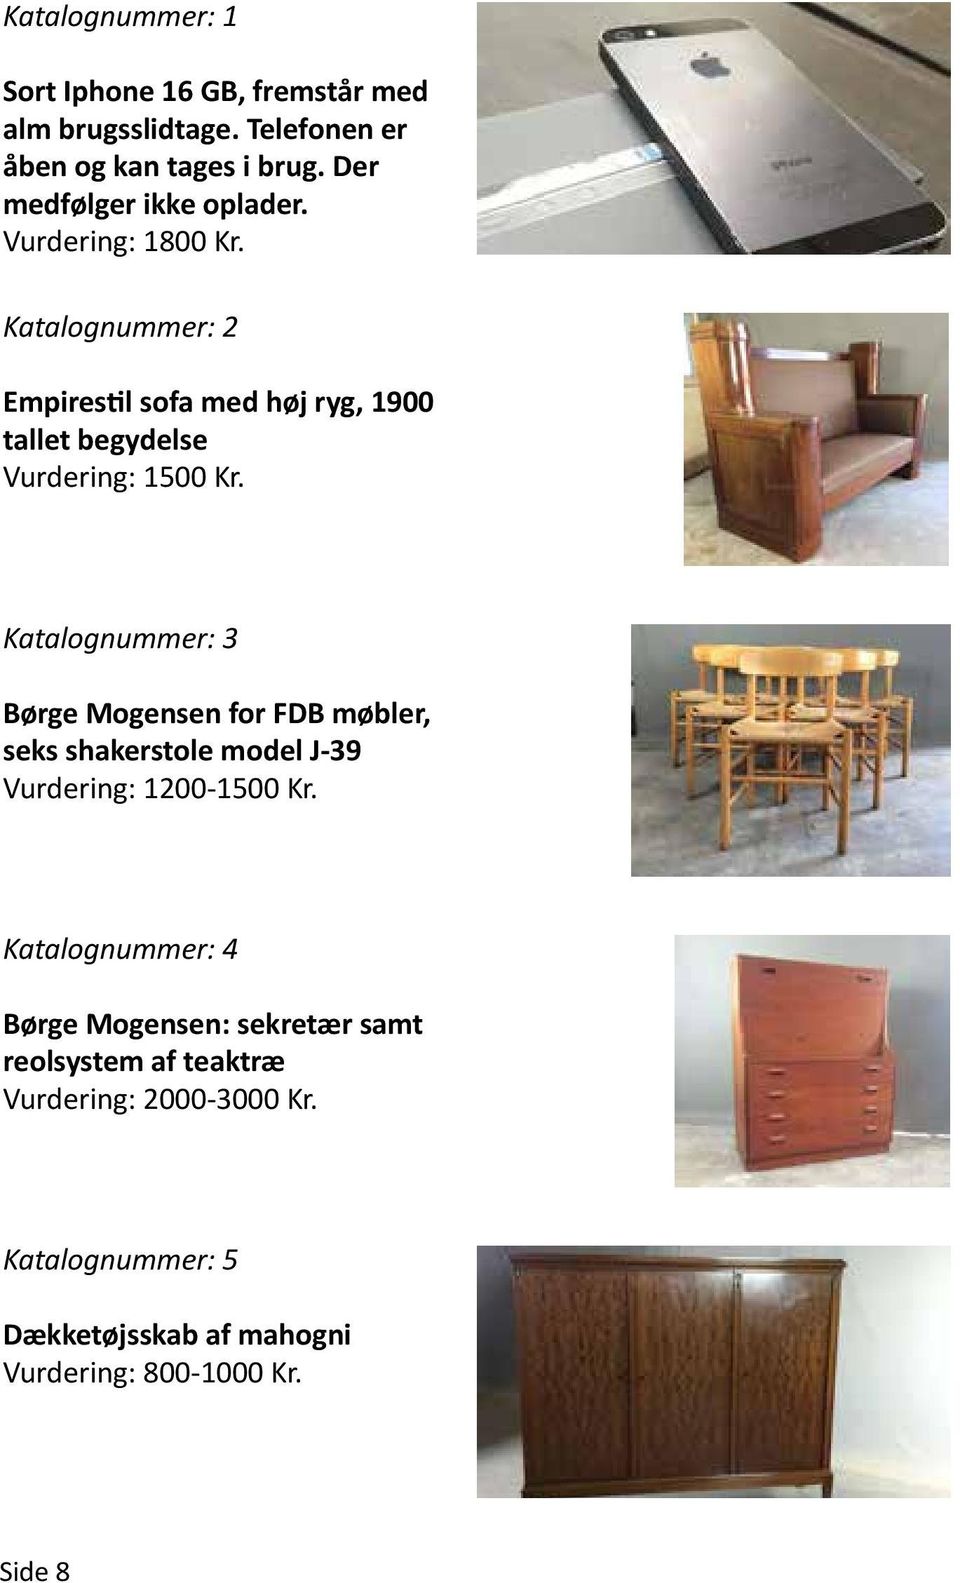 Katalognummer: 2 Empirestil sofa med høj ryg, 1900 tallet begydelse Vurdering: 1500 Kr.